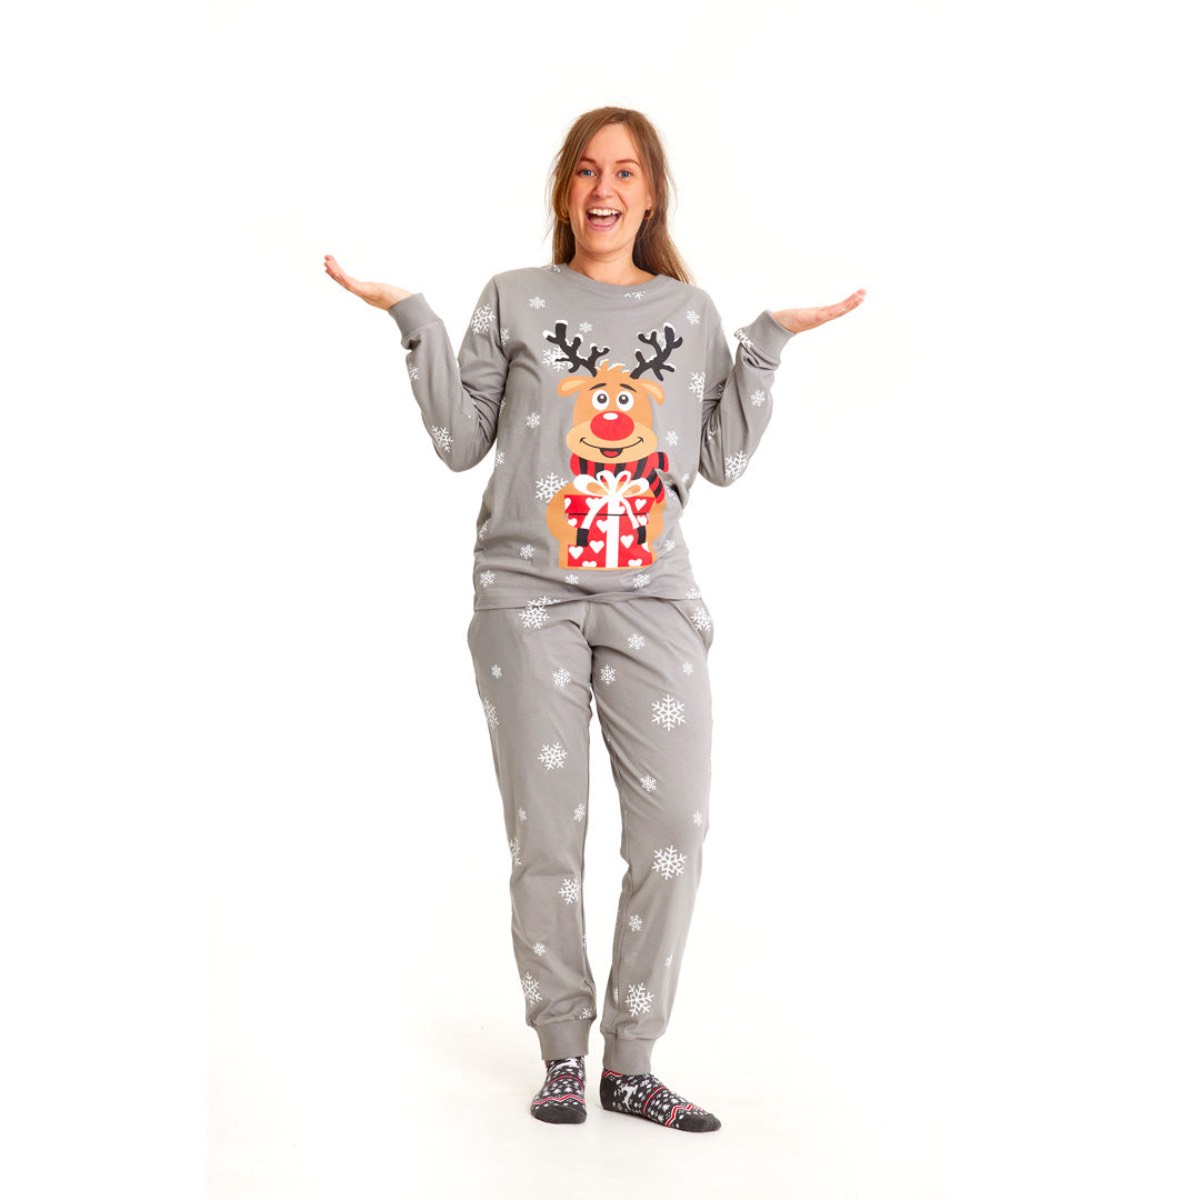 pijama-navidad-adultos-unisex-gris-reno-rodolfo-mujer-1728x